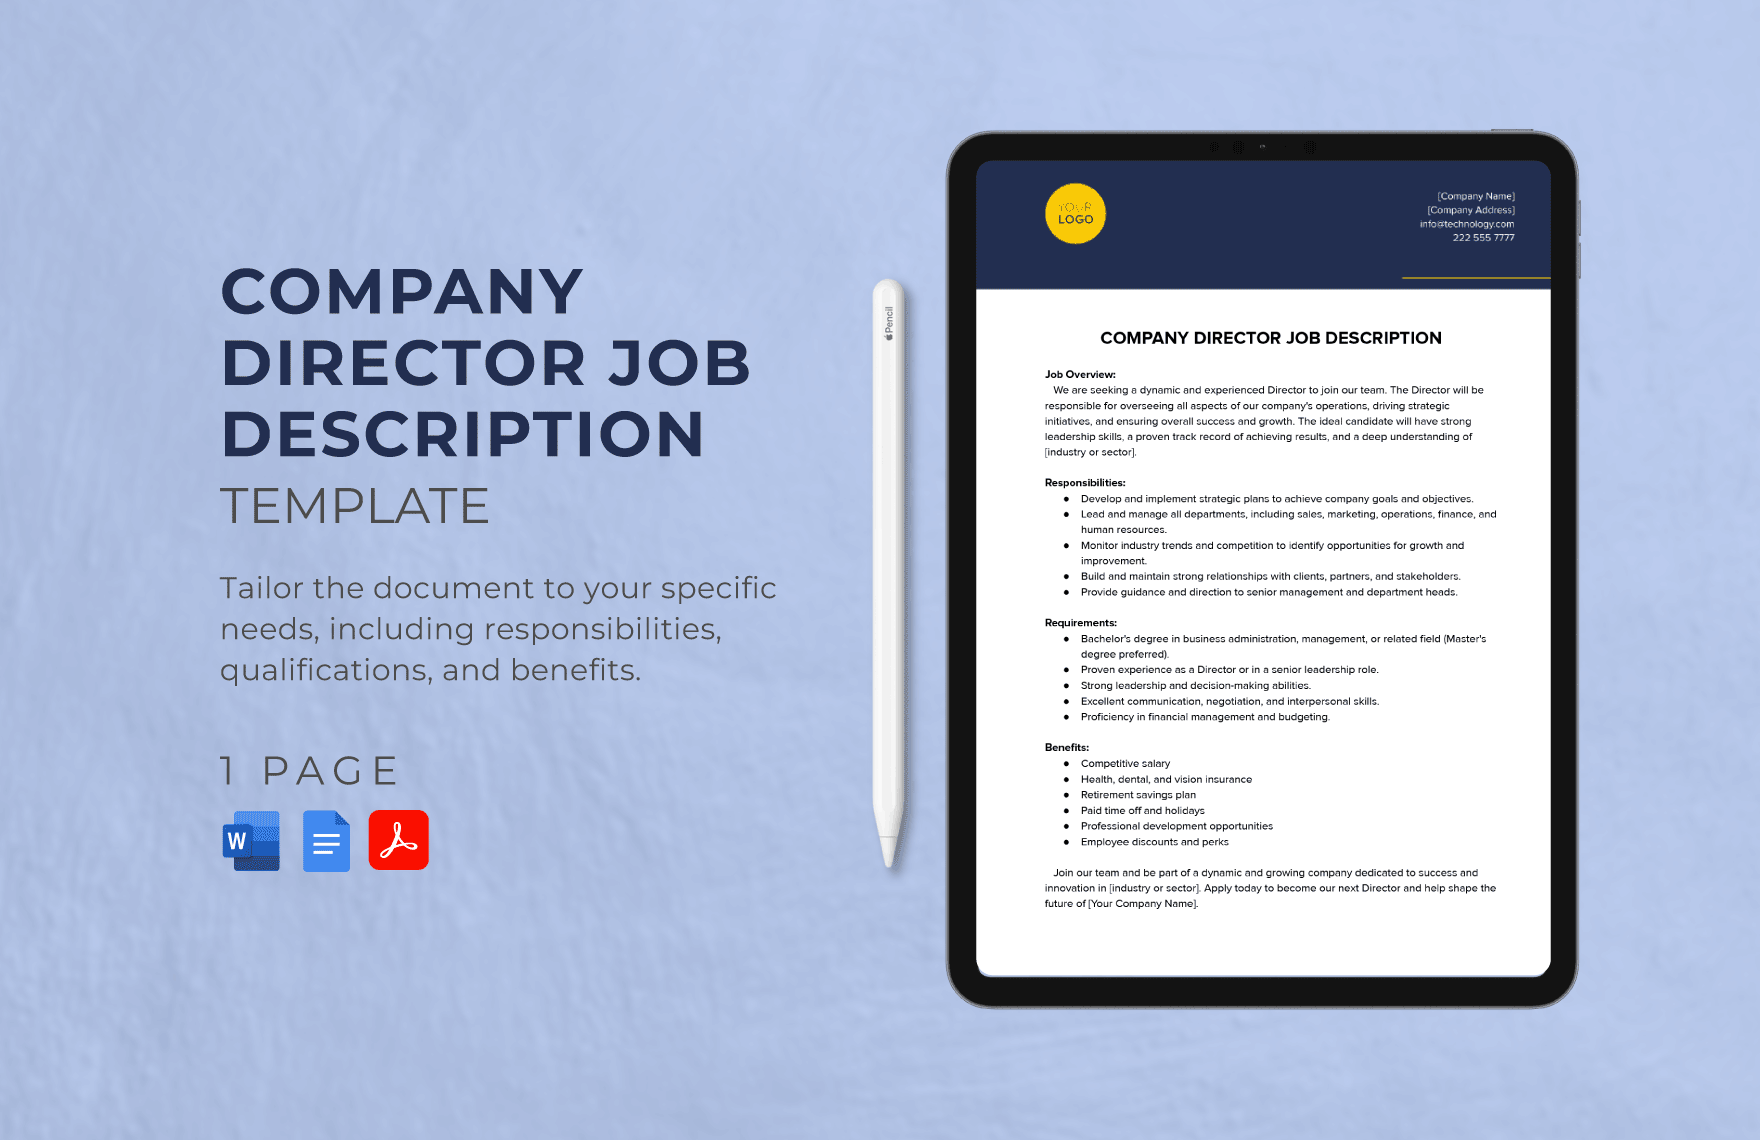 Company Director Job Description